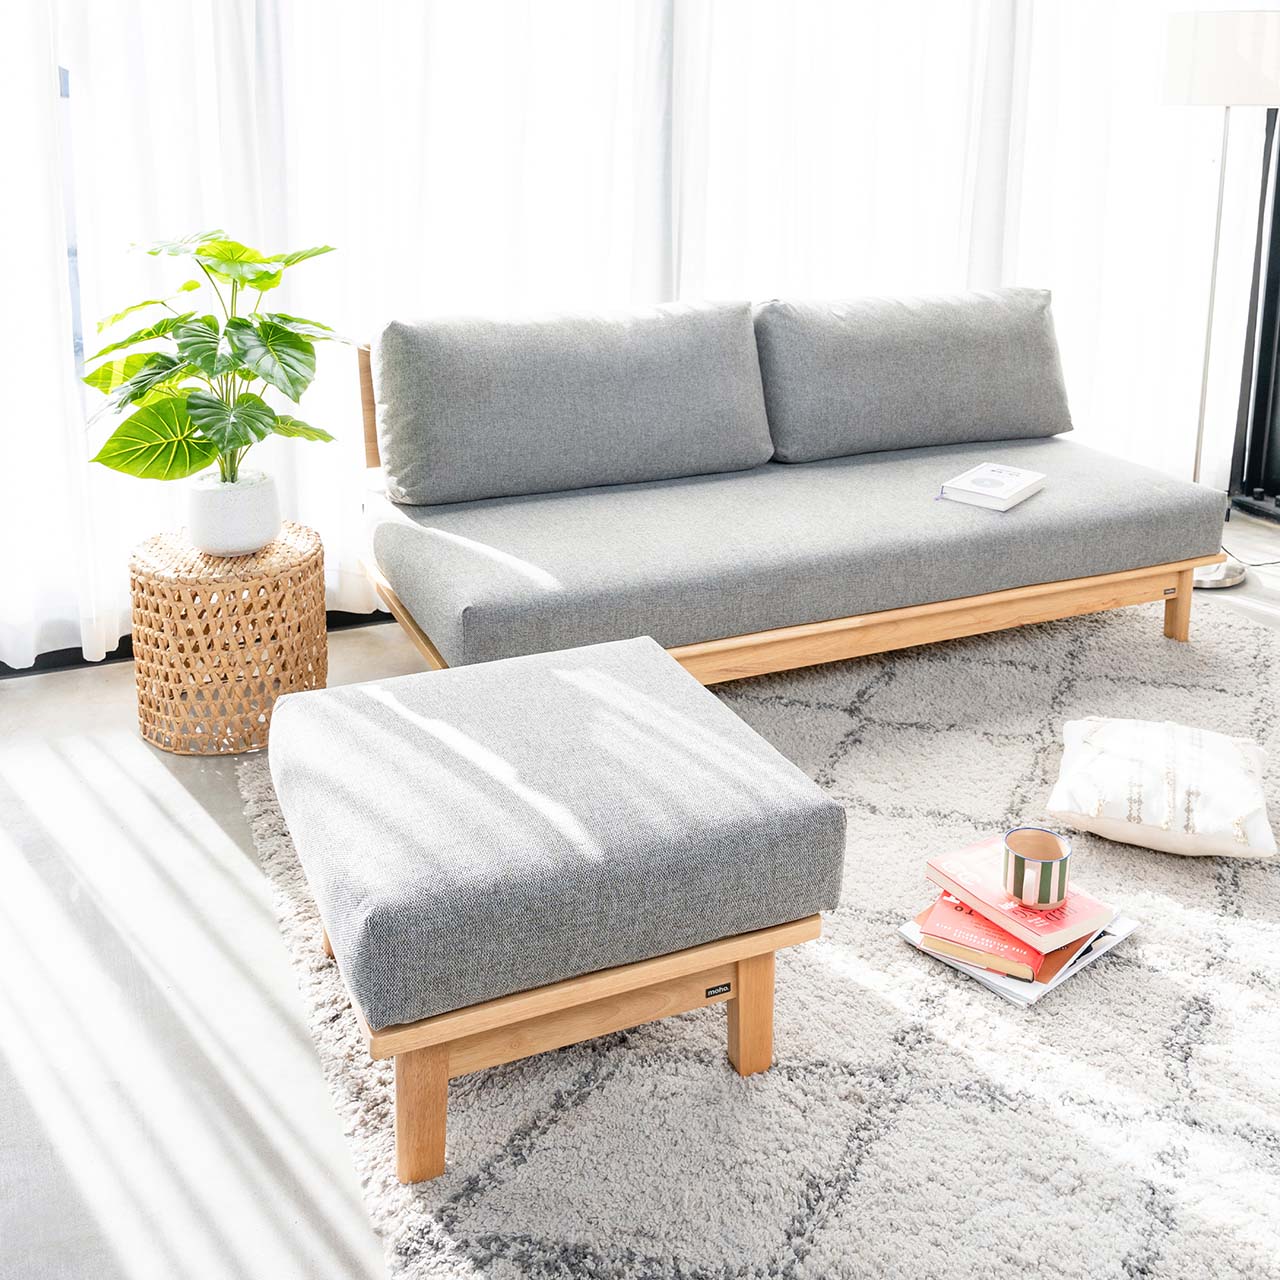 Ghế sofa gỗ VLINE nệm xám đậm cho không gian sống đẹp